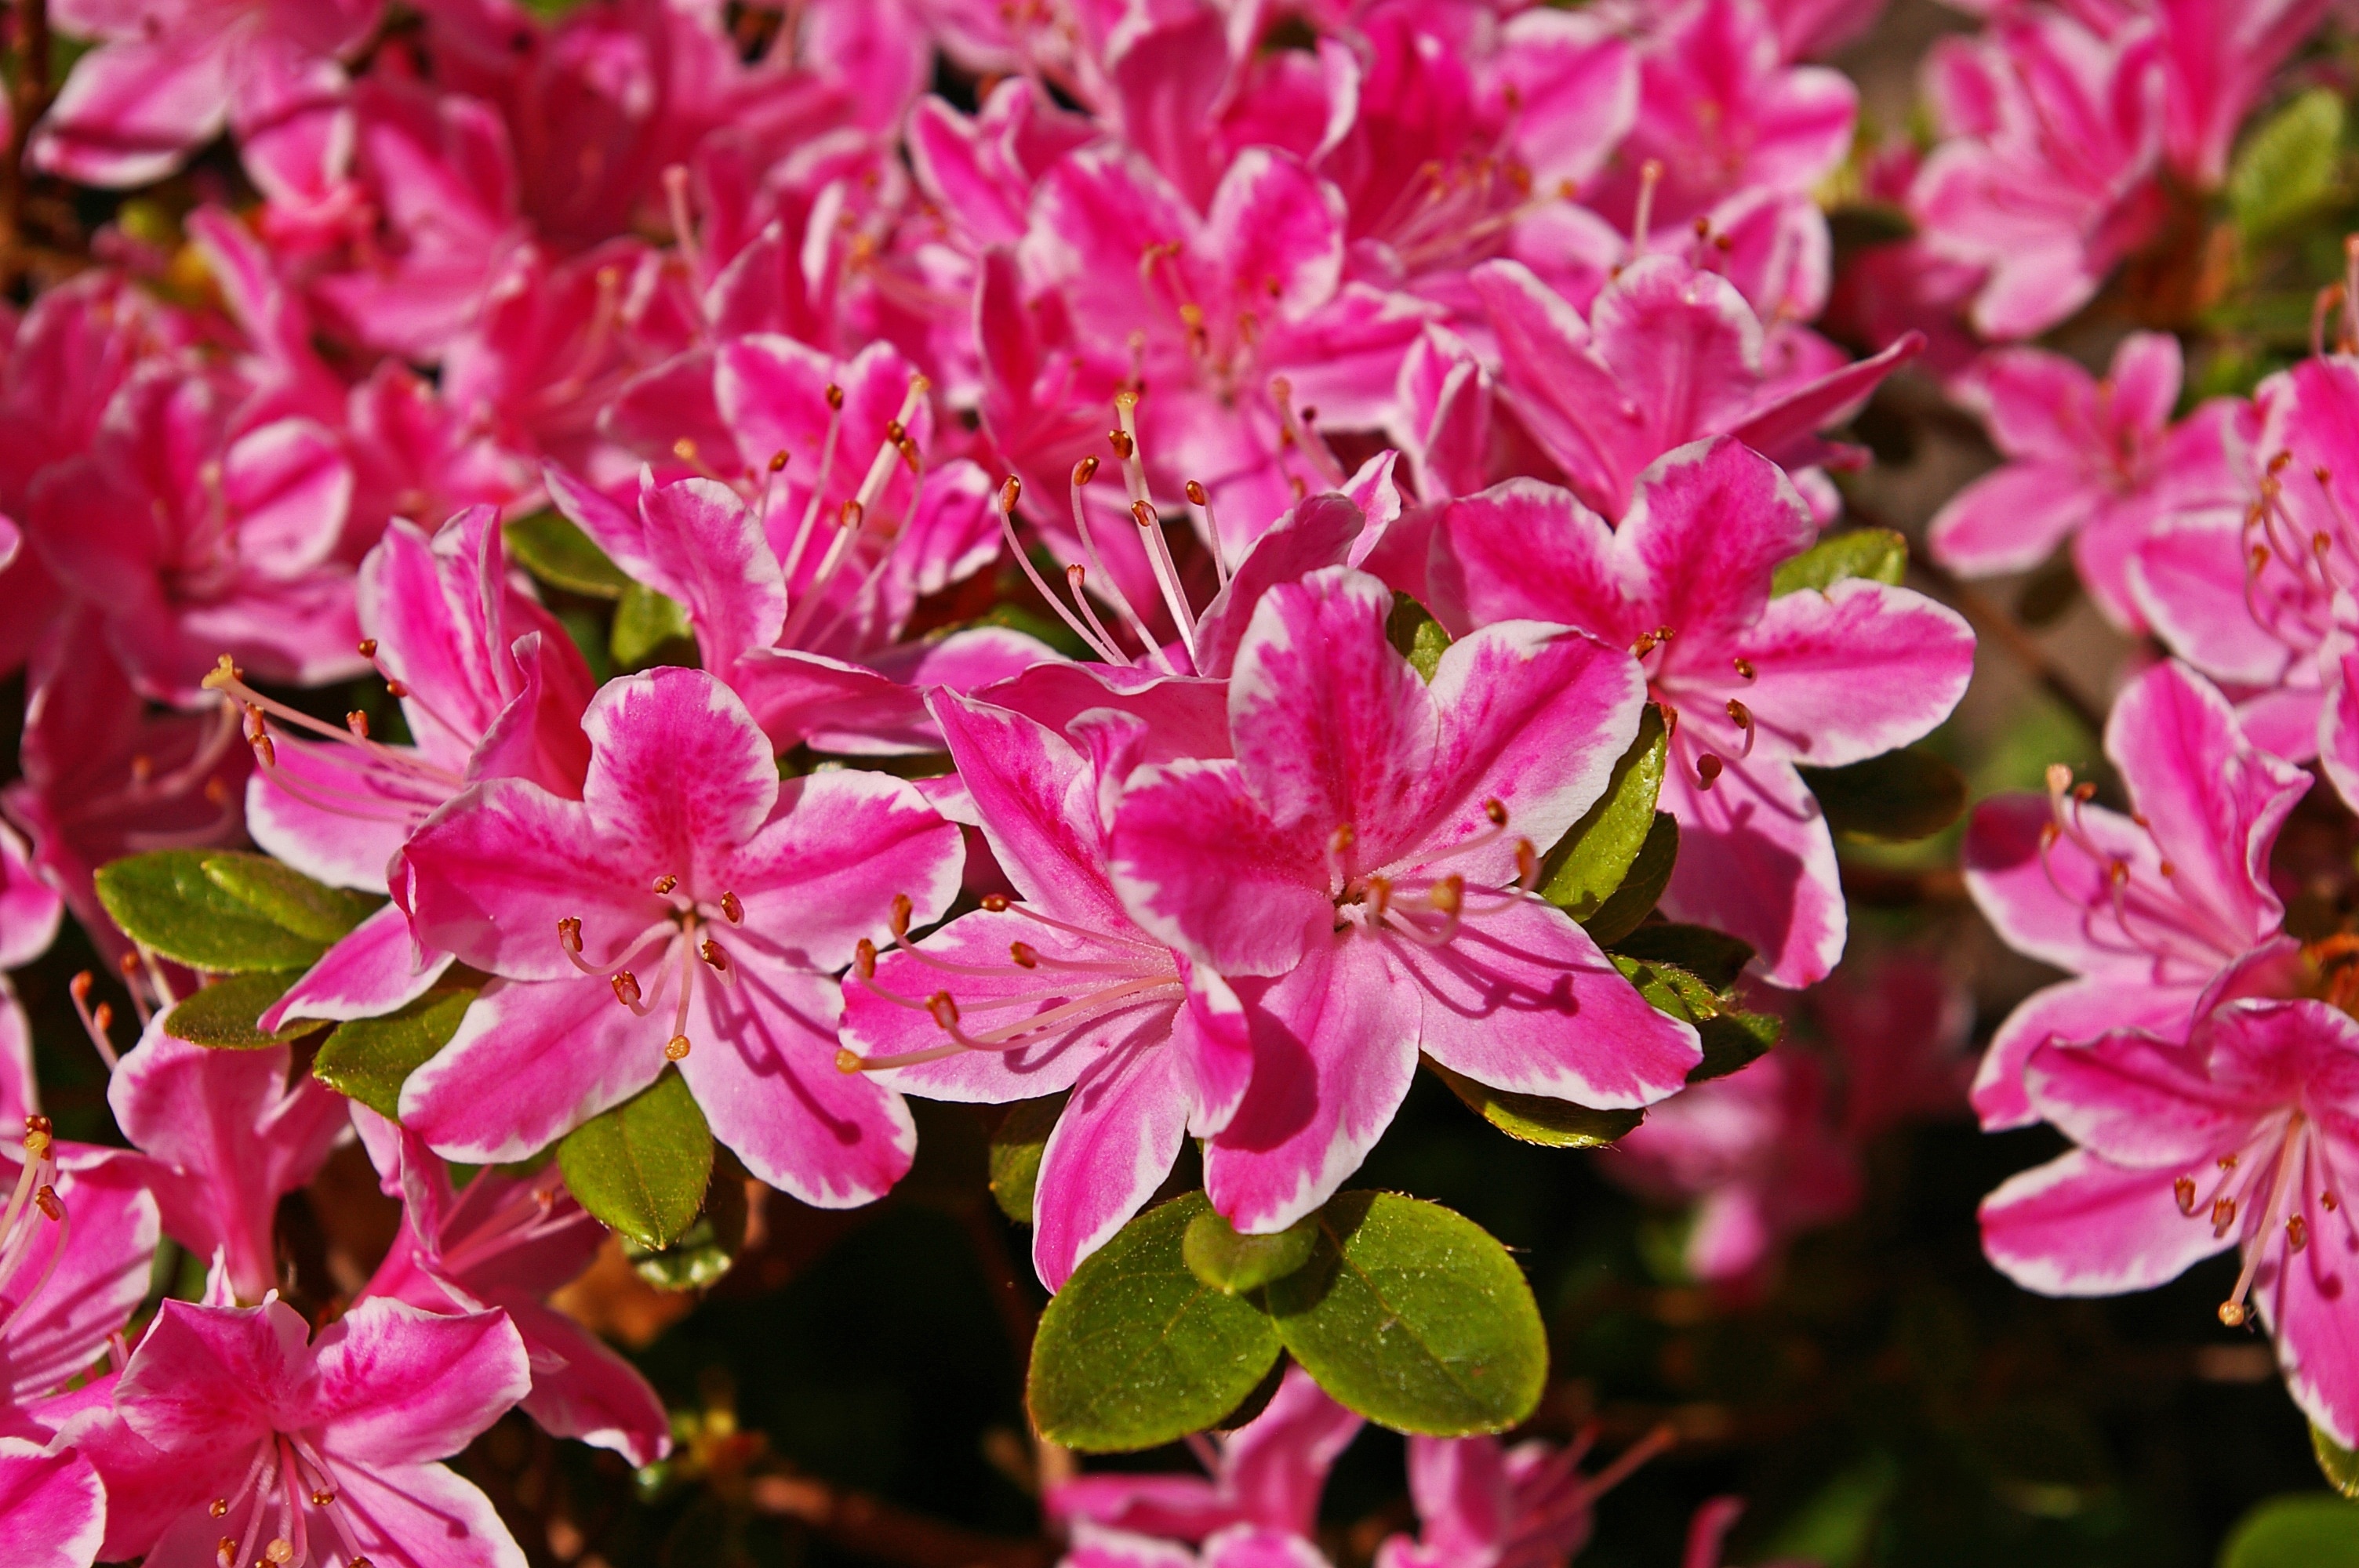 pink 5 petaled flowers